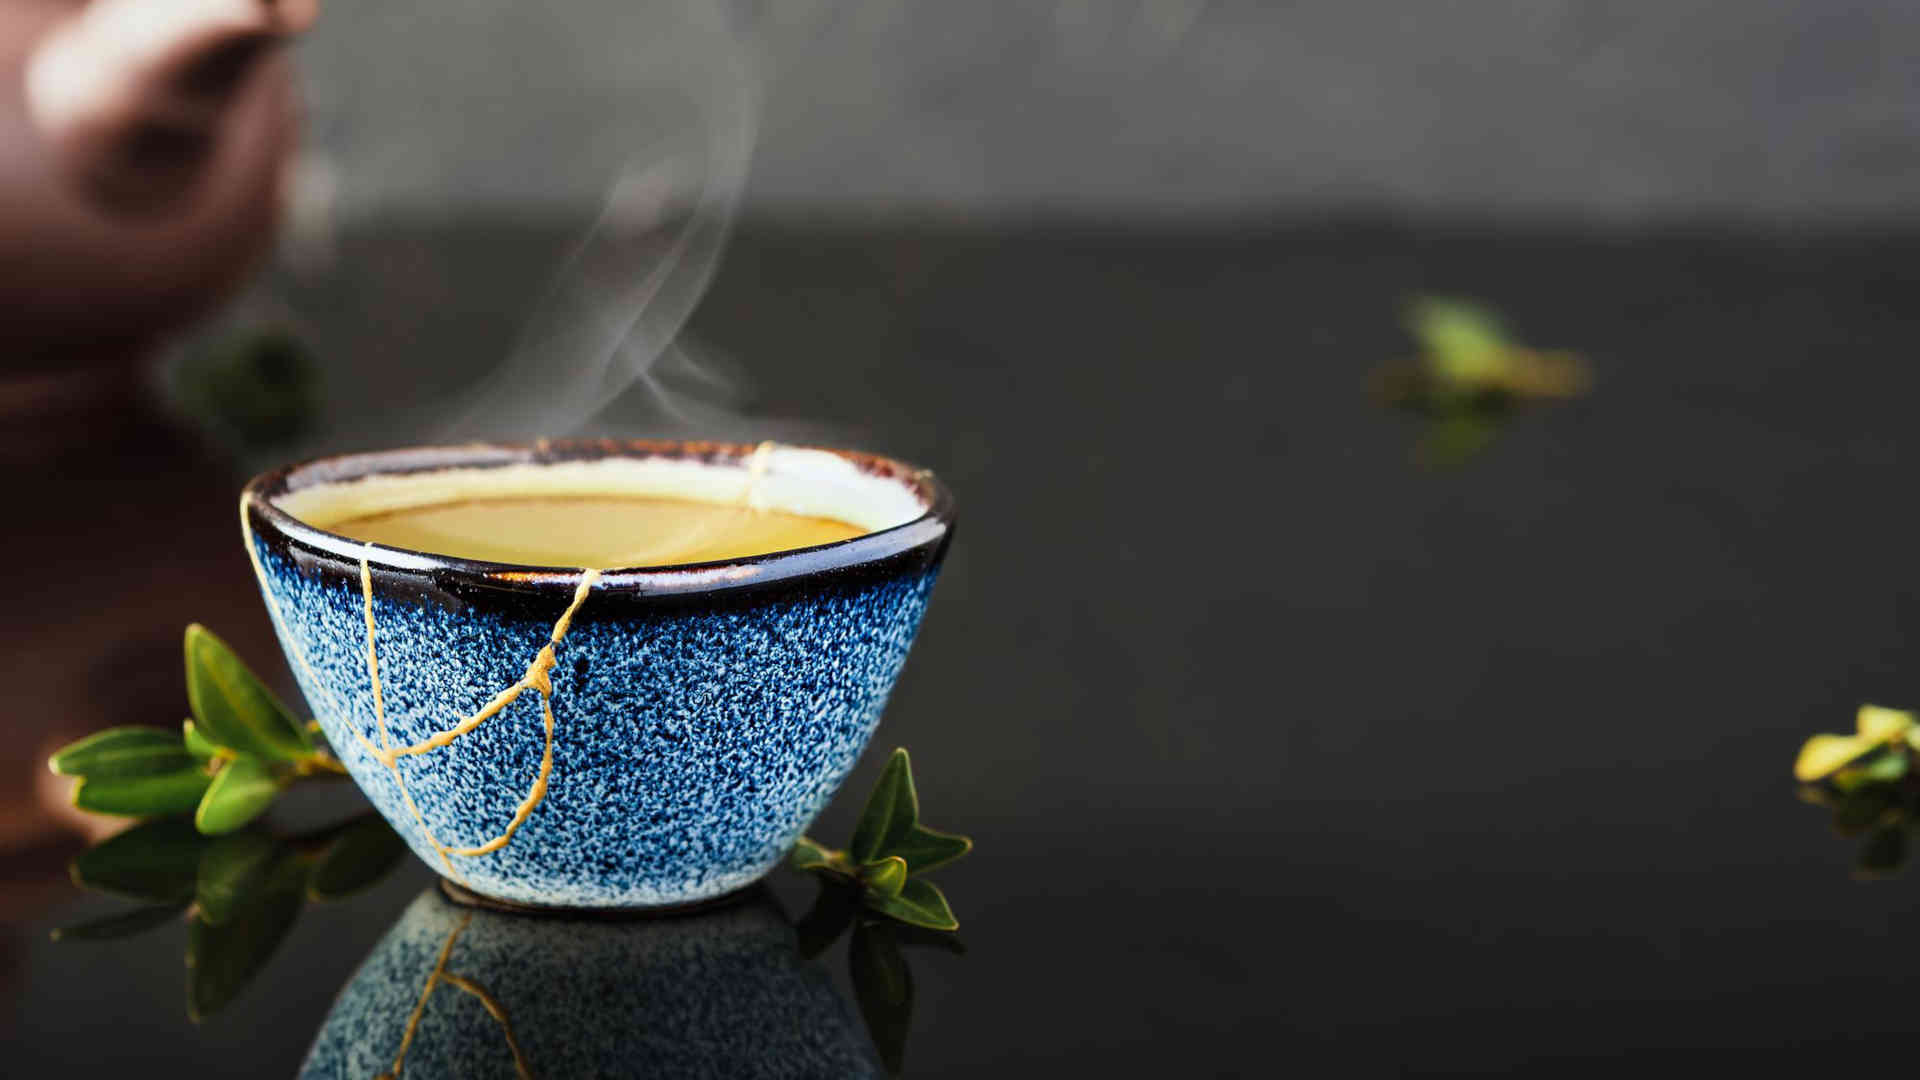 Eine Teeschale mit dampfenden Tee. Die goldenen Linien deuten darauf hin, dass sie mit Hilfe von Kintsugi wieder zusammengesetzt wurde. Sie hat damit ein zweites Leben erhalten.